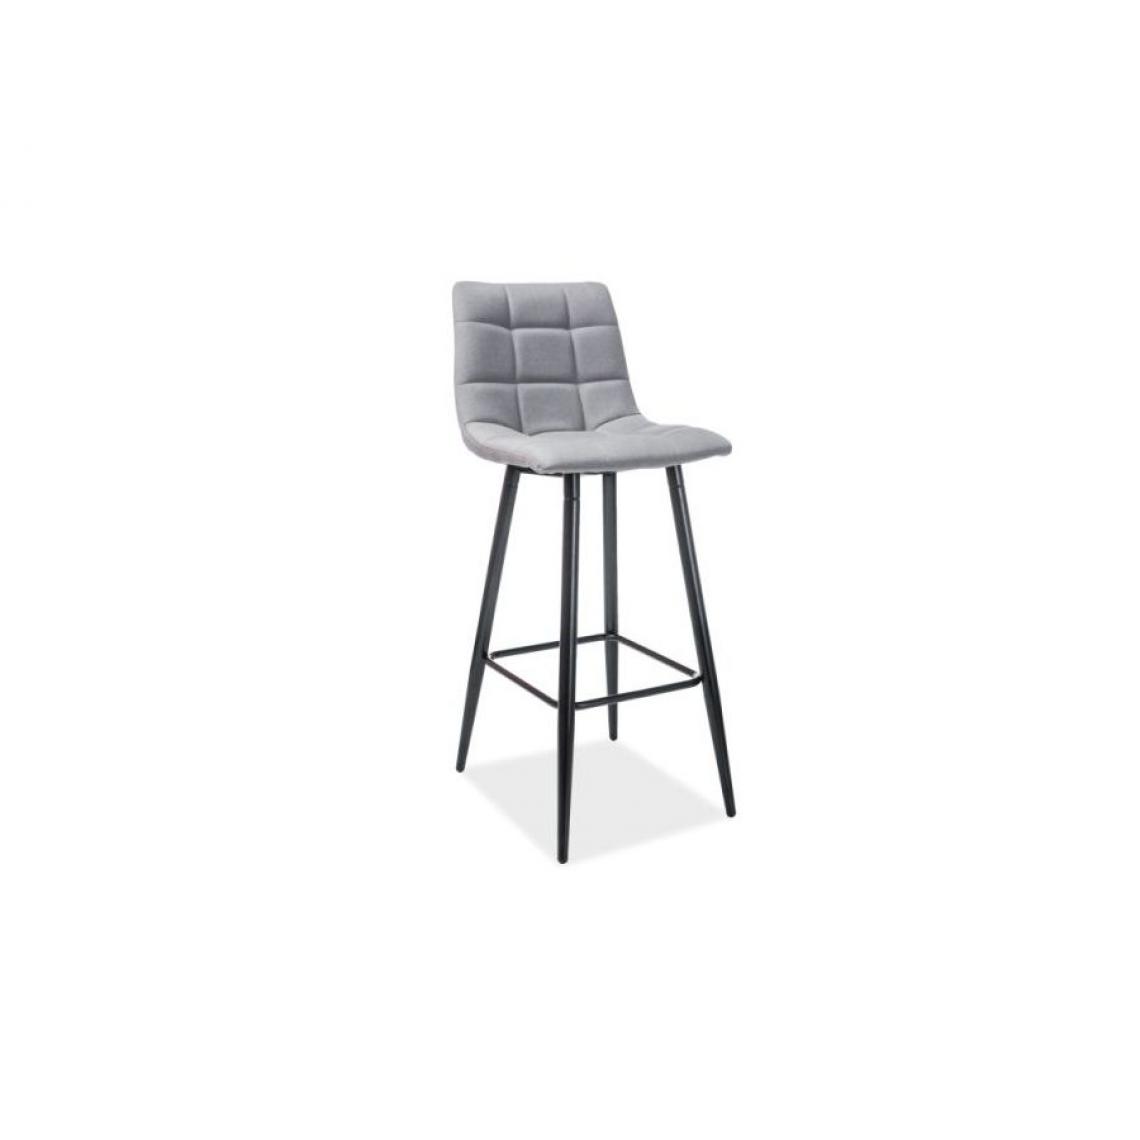 Hucoco - SPICO | Tabouret de bar moderne | Dimensions 103x42x34 cm | Siège tissu + base métal | Chaise haute de cuisine | Chaise de bar - Gris - Tabourets